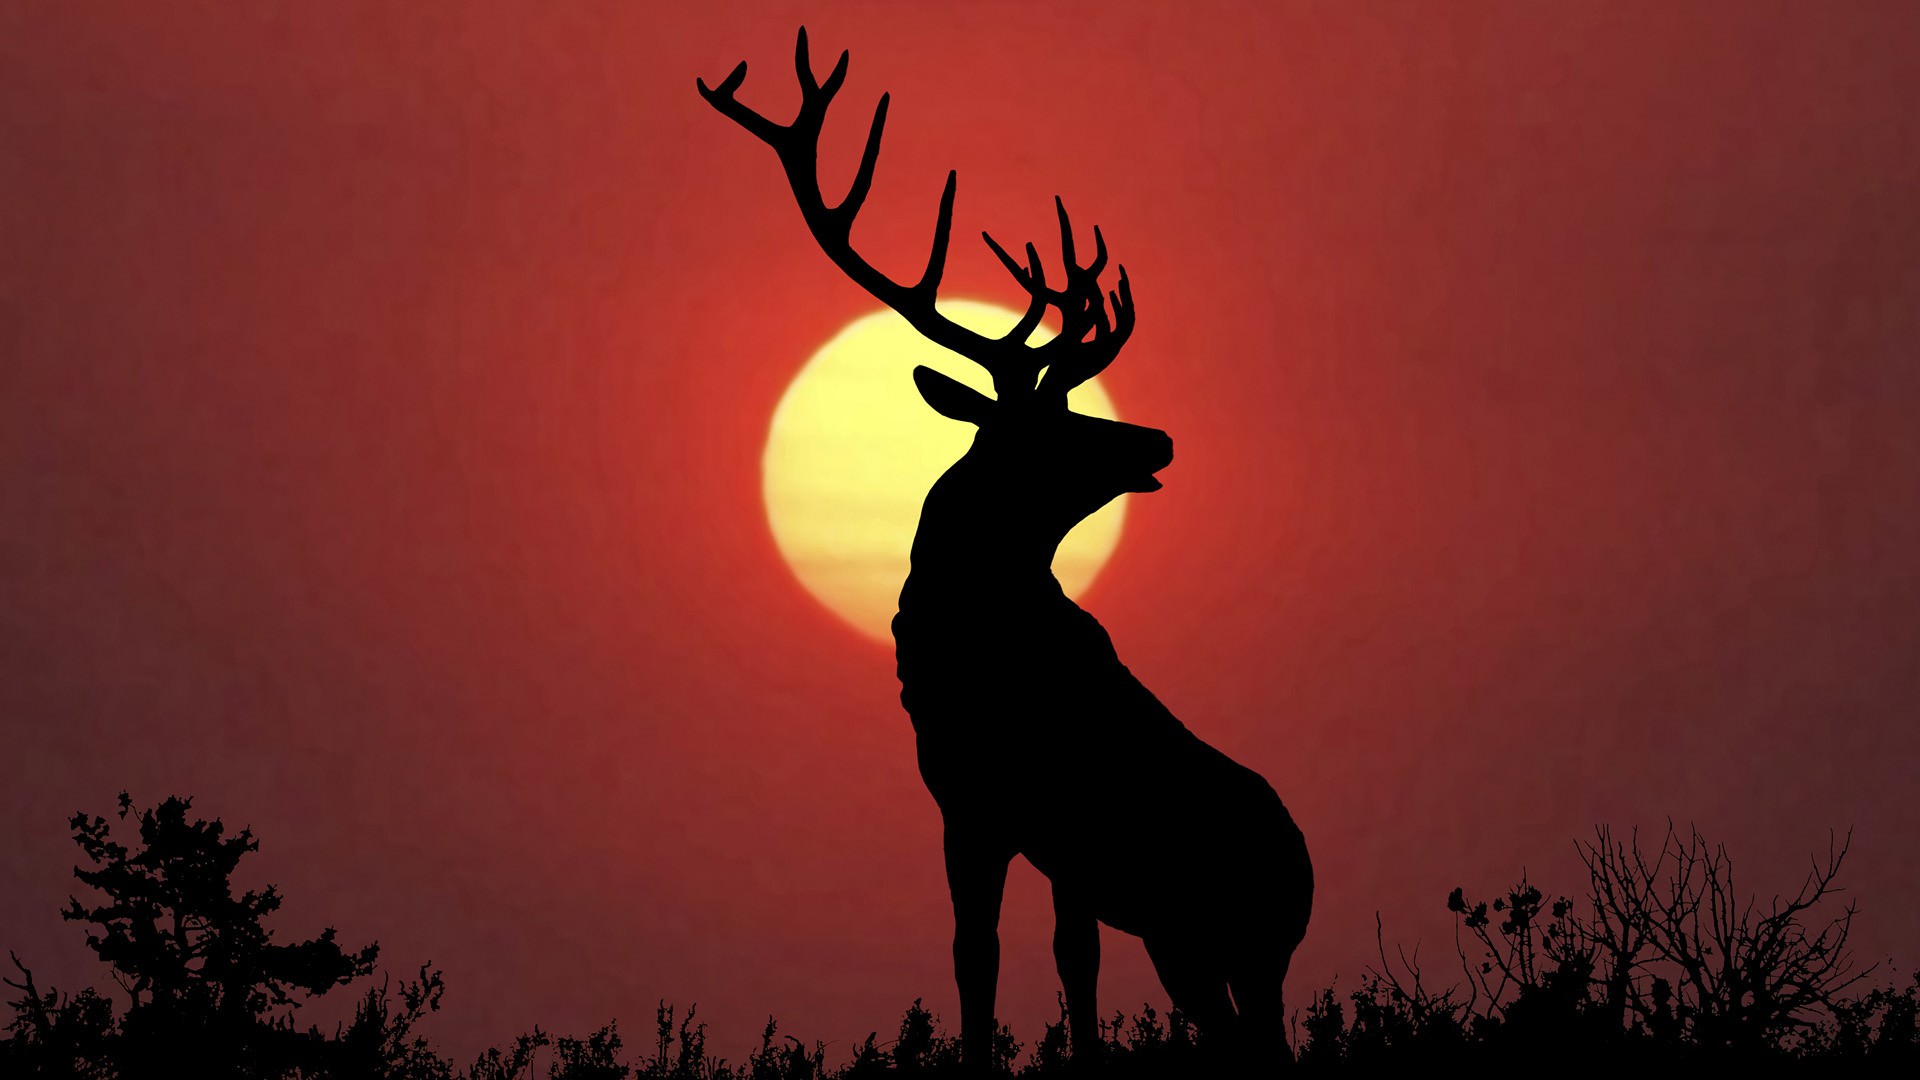 deer wallpaper iphone